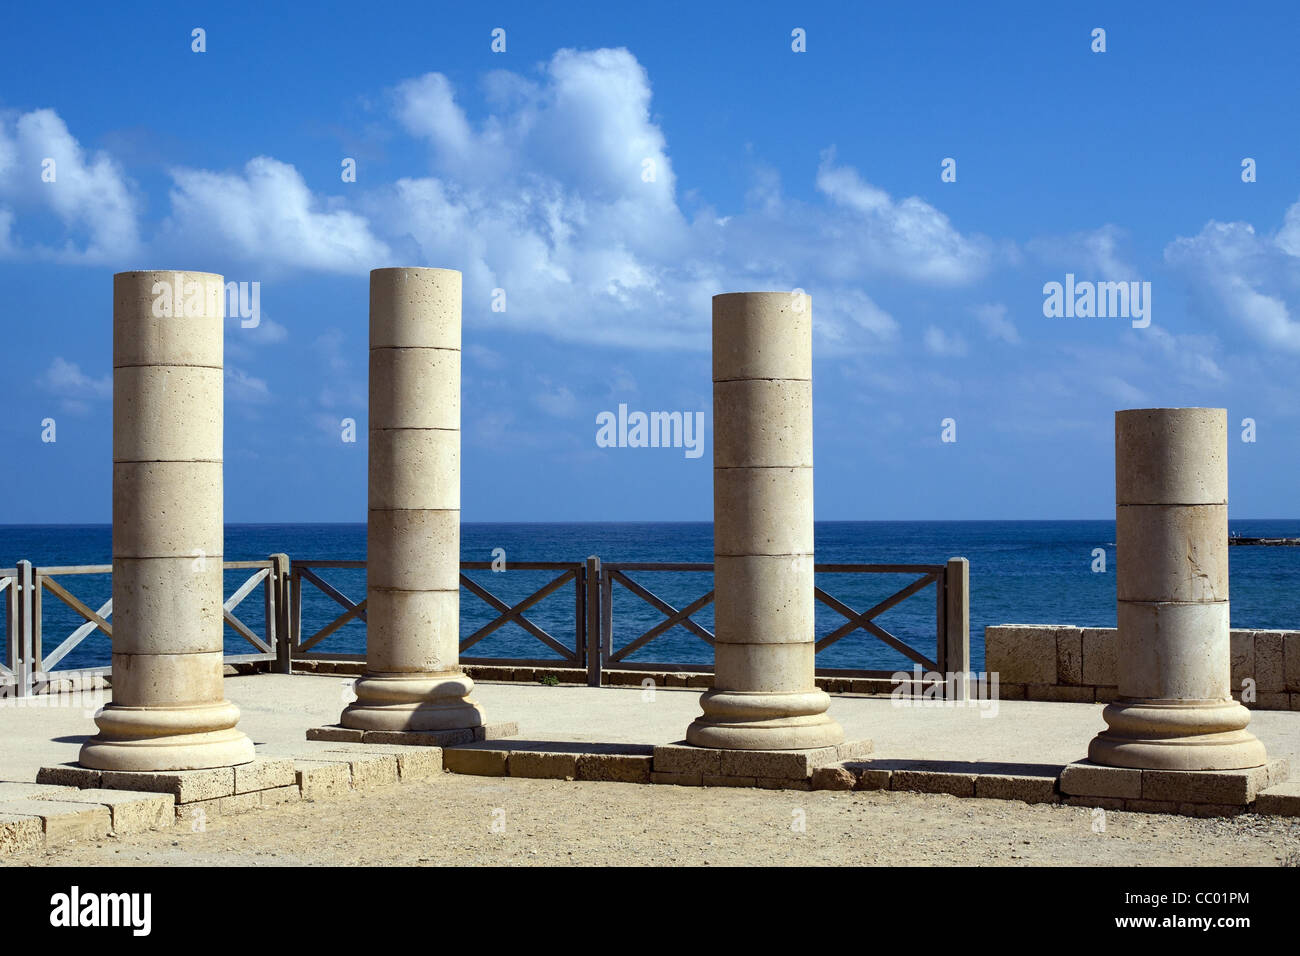 Ruines de colonnes romaines, SITE ARCHÉOLOGIQUE DE LA VILLE antique de Césarée, en Israël Banque D'Images